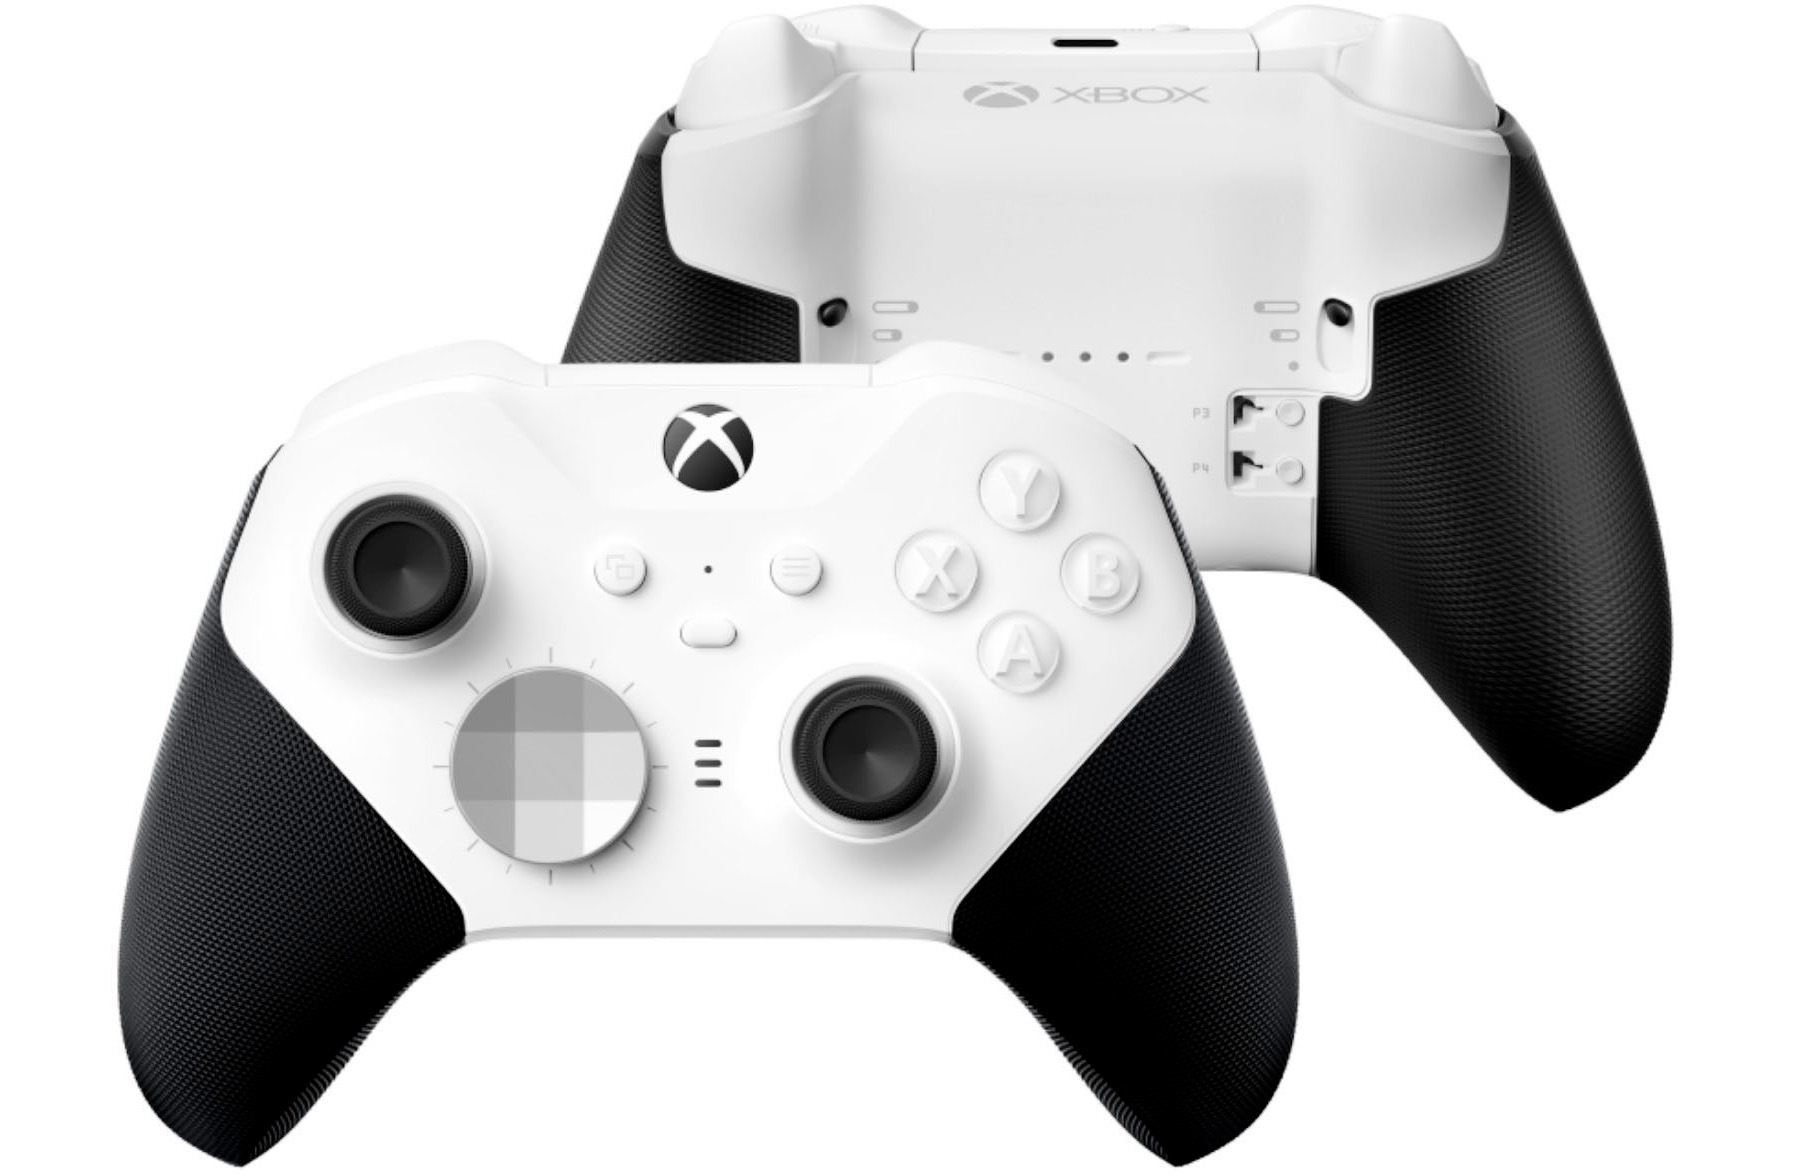 Bộ điều khiển không dây Xbox Elite Series 2 Core của Microsoft giảm xuống mức thấp mới là 100 đô la